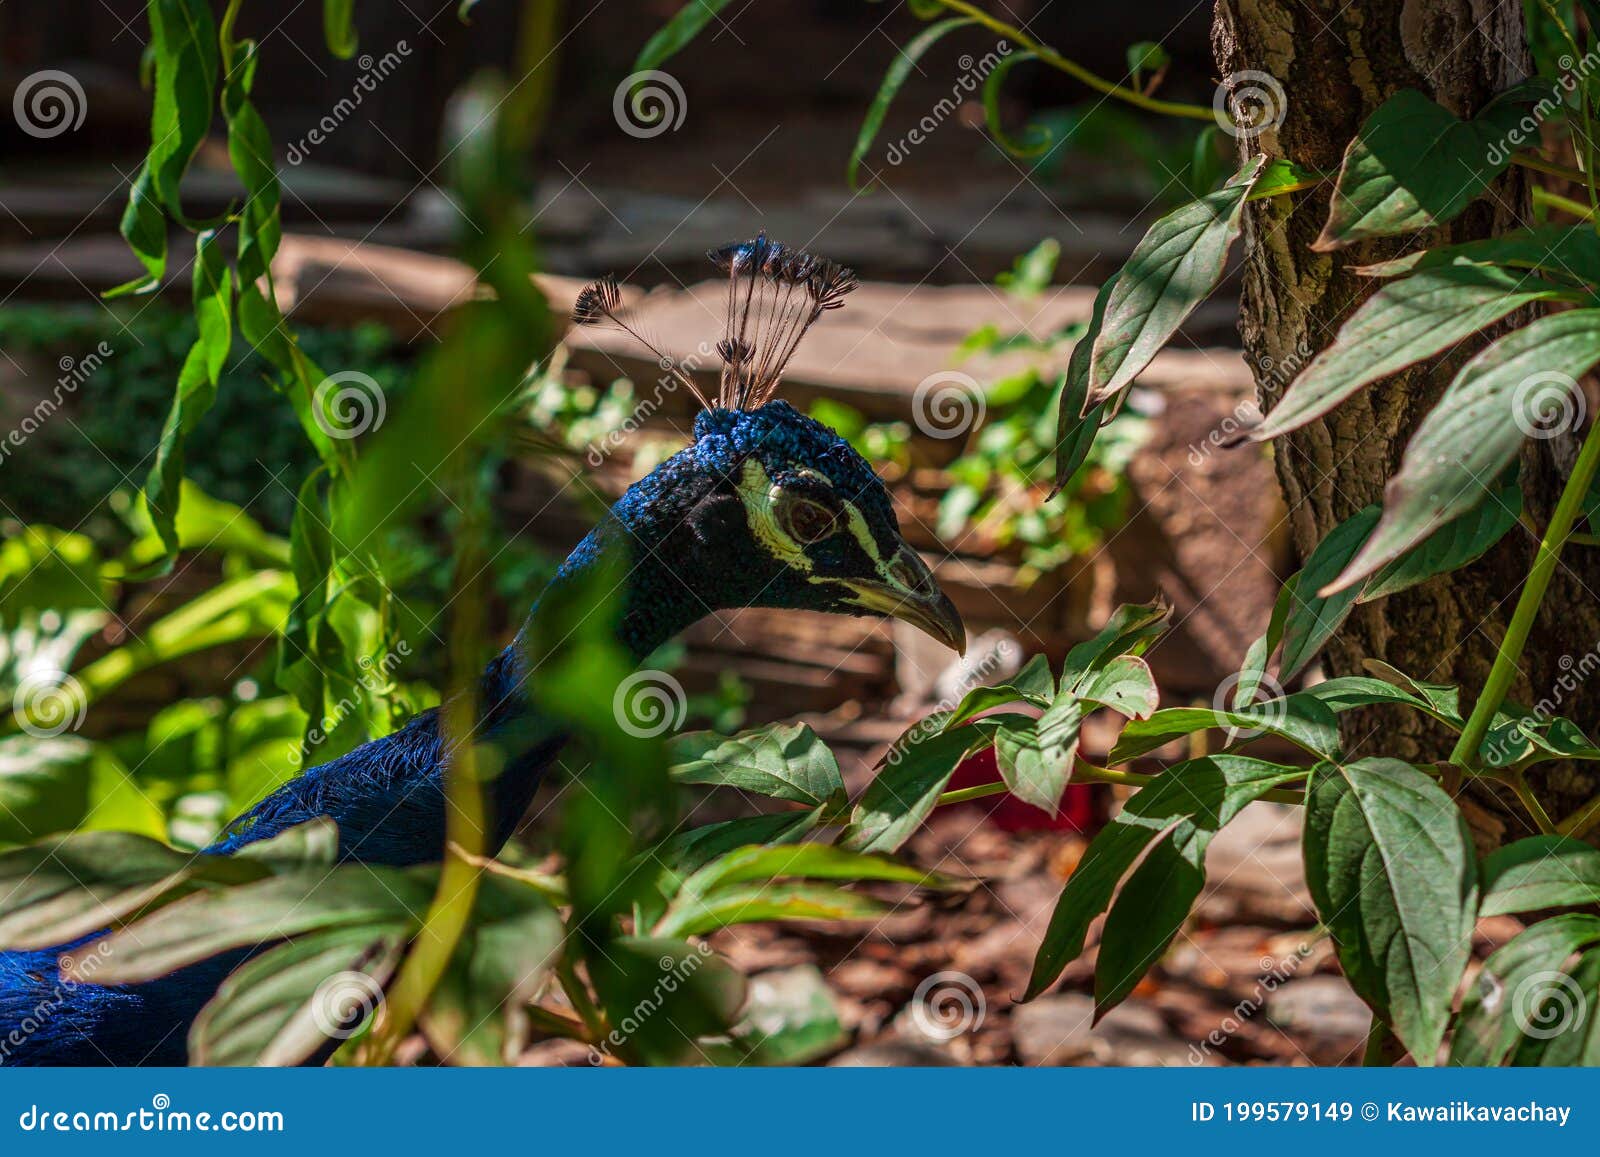 深色 穆迪自然背景中的孔雀美头蓝绿色羽毛壁纸的鸟库存图片 图片包括有本质 高雅 作用 烧杯